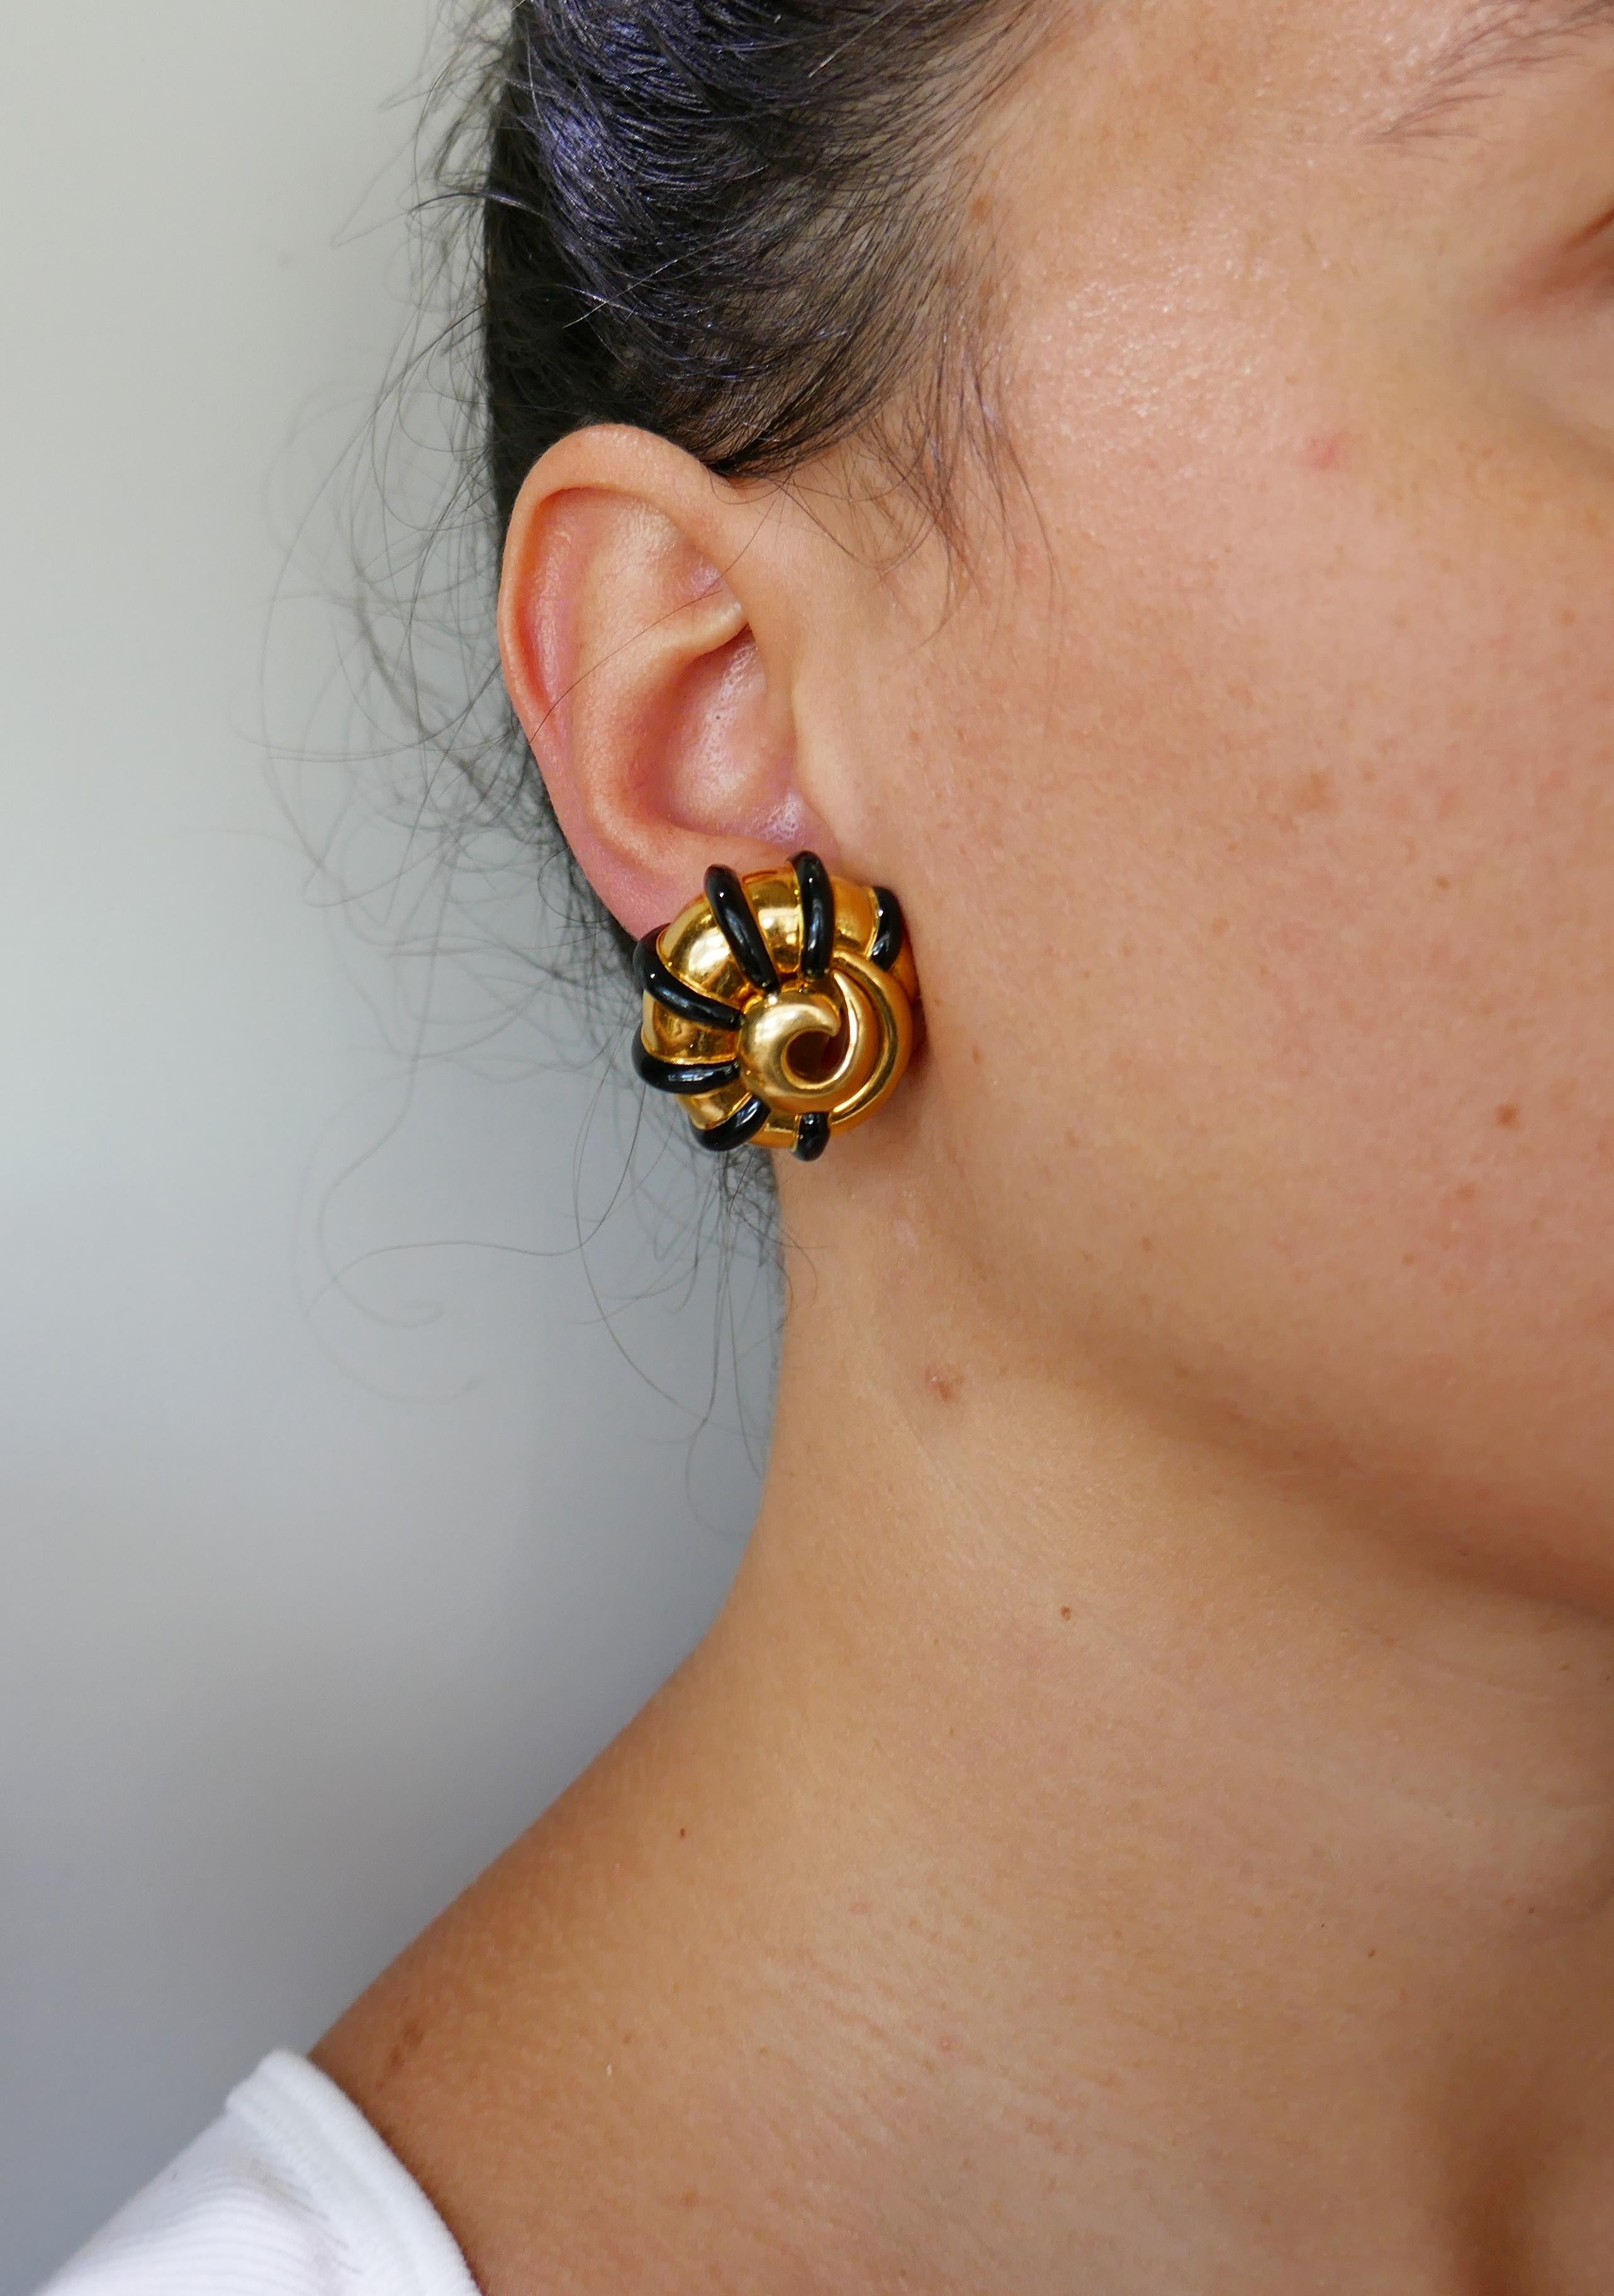 Women's M. Cooperman Enamel Yellow Gold Snail Earrings Clip-On